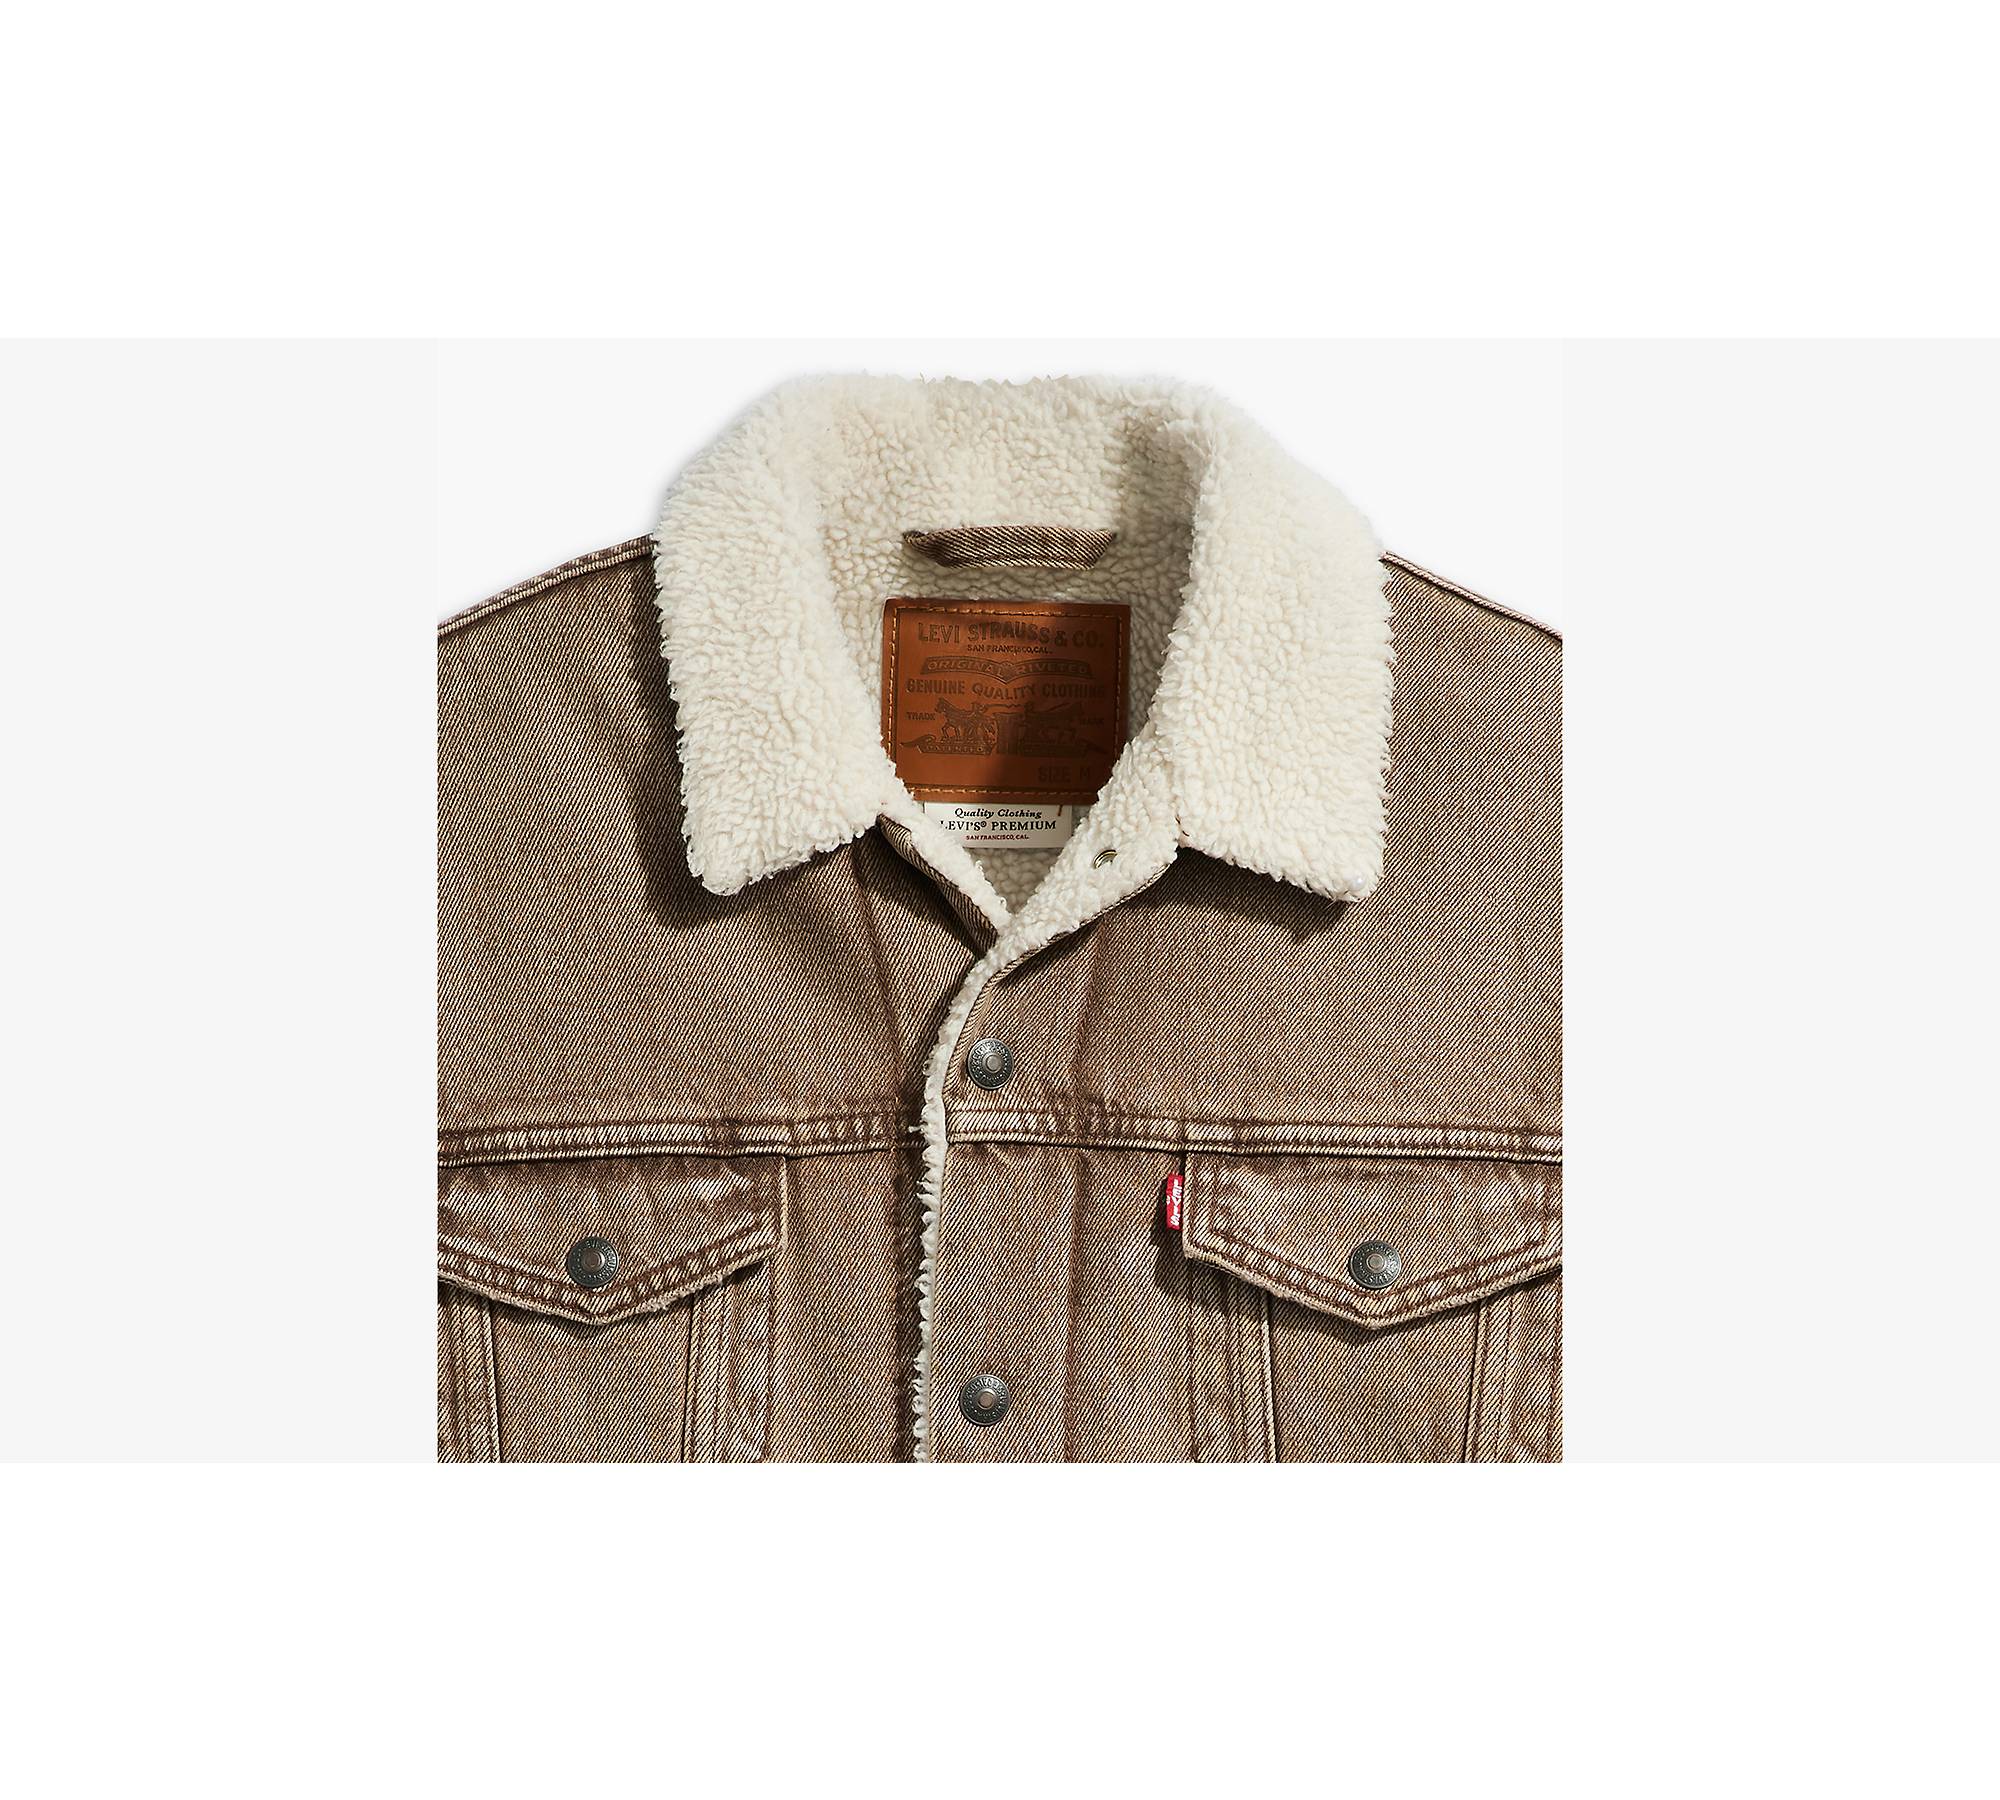 Distressed Vintage 1980s Levis Sherpa Lined Denim Jacket Mens Size